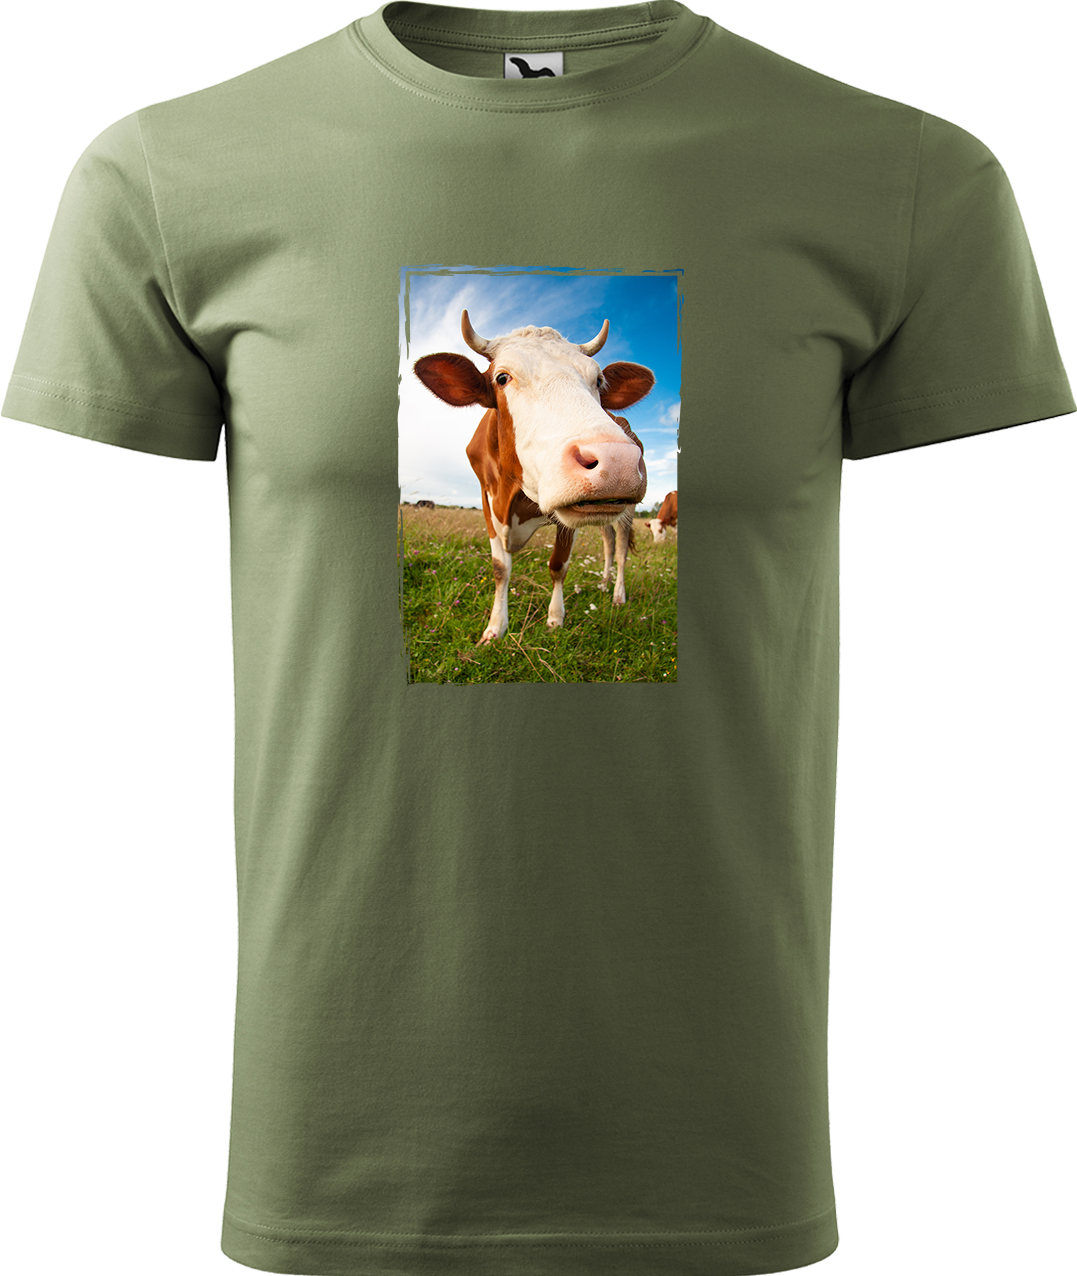 Pánské tričko s krávou - Na pastvě Velikost: XL, Barva: Světlá khaki (28), Střih: pánský